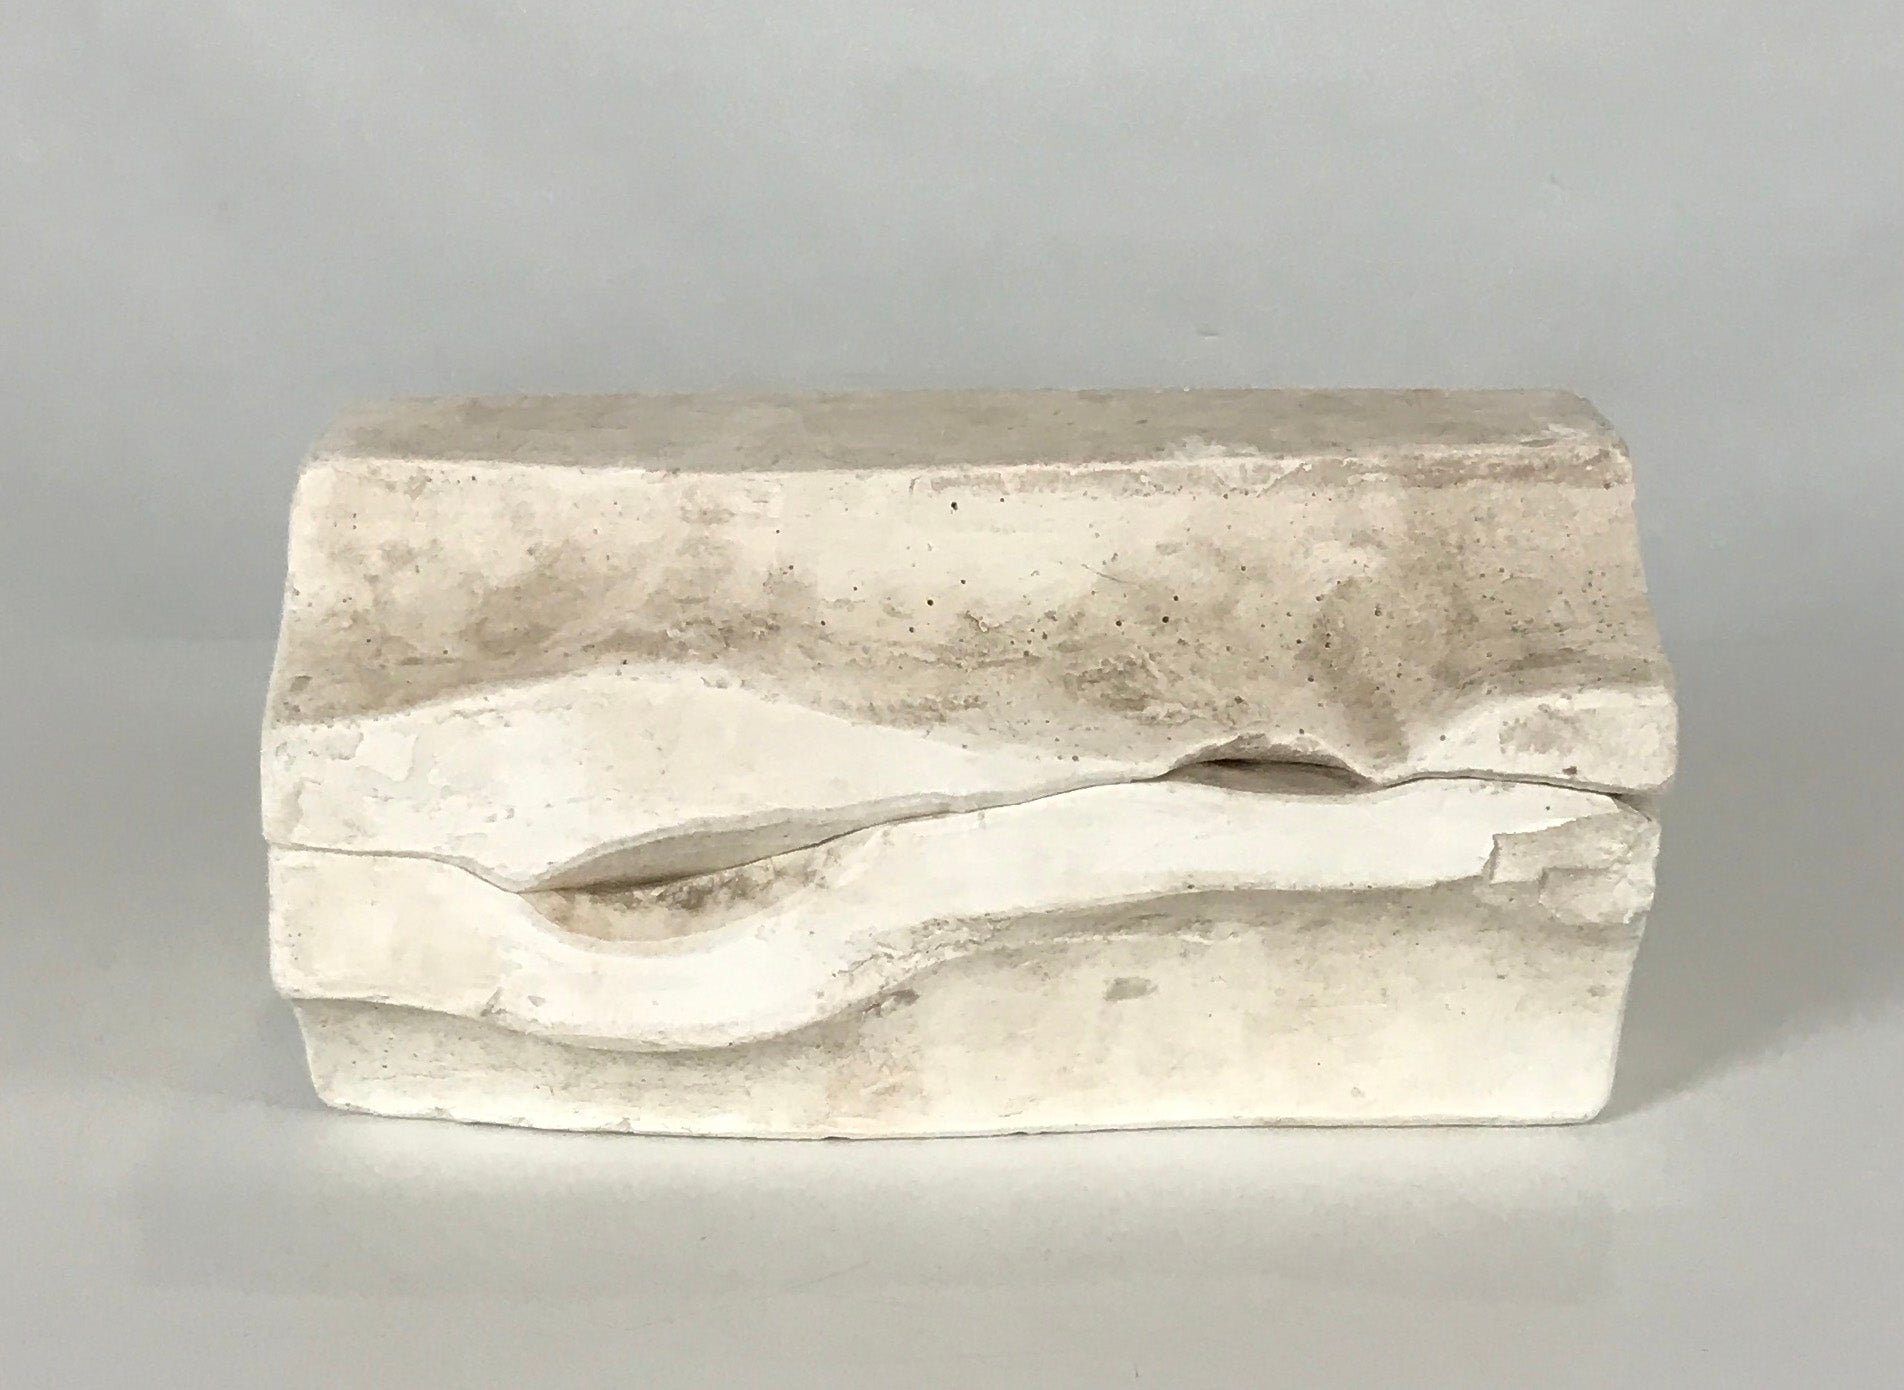 Bunny Ceramic Slip Casting Mold